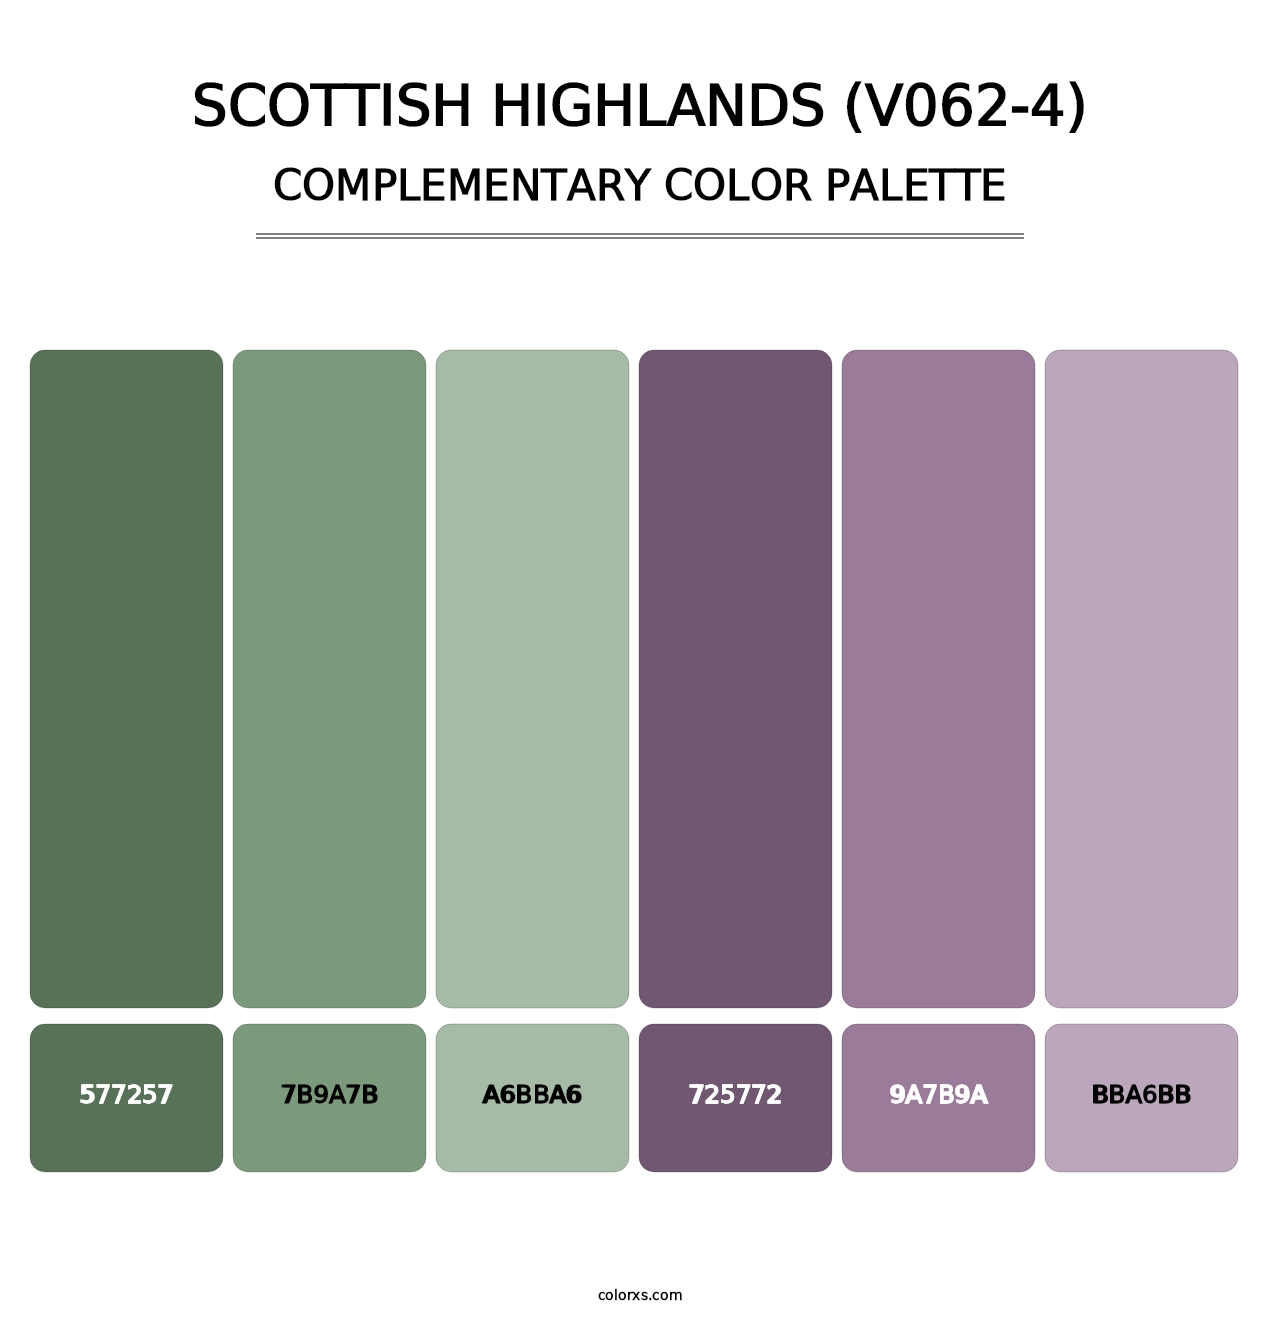 Scottish Highlands (V062-4) - Complementary Color Palette